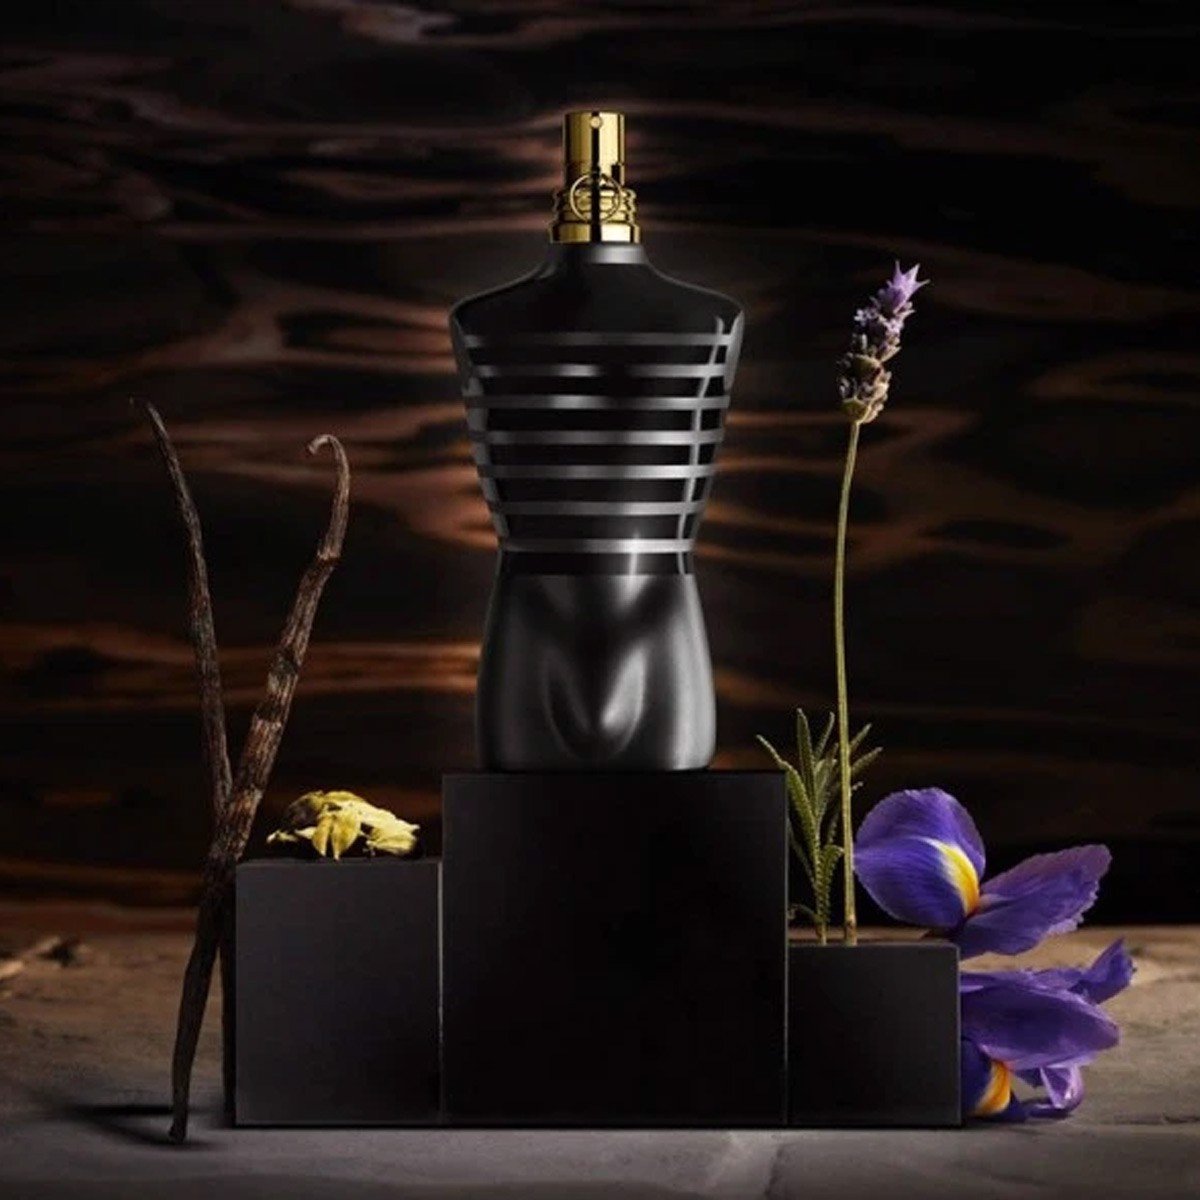 Nước Hoa Jean Paul Gaultier Le Male Le Parfum EDP 125ml